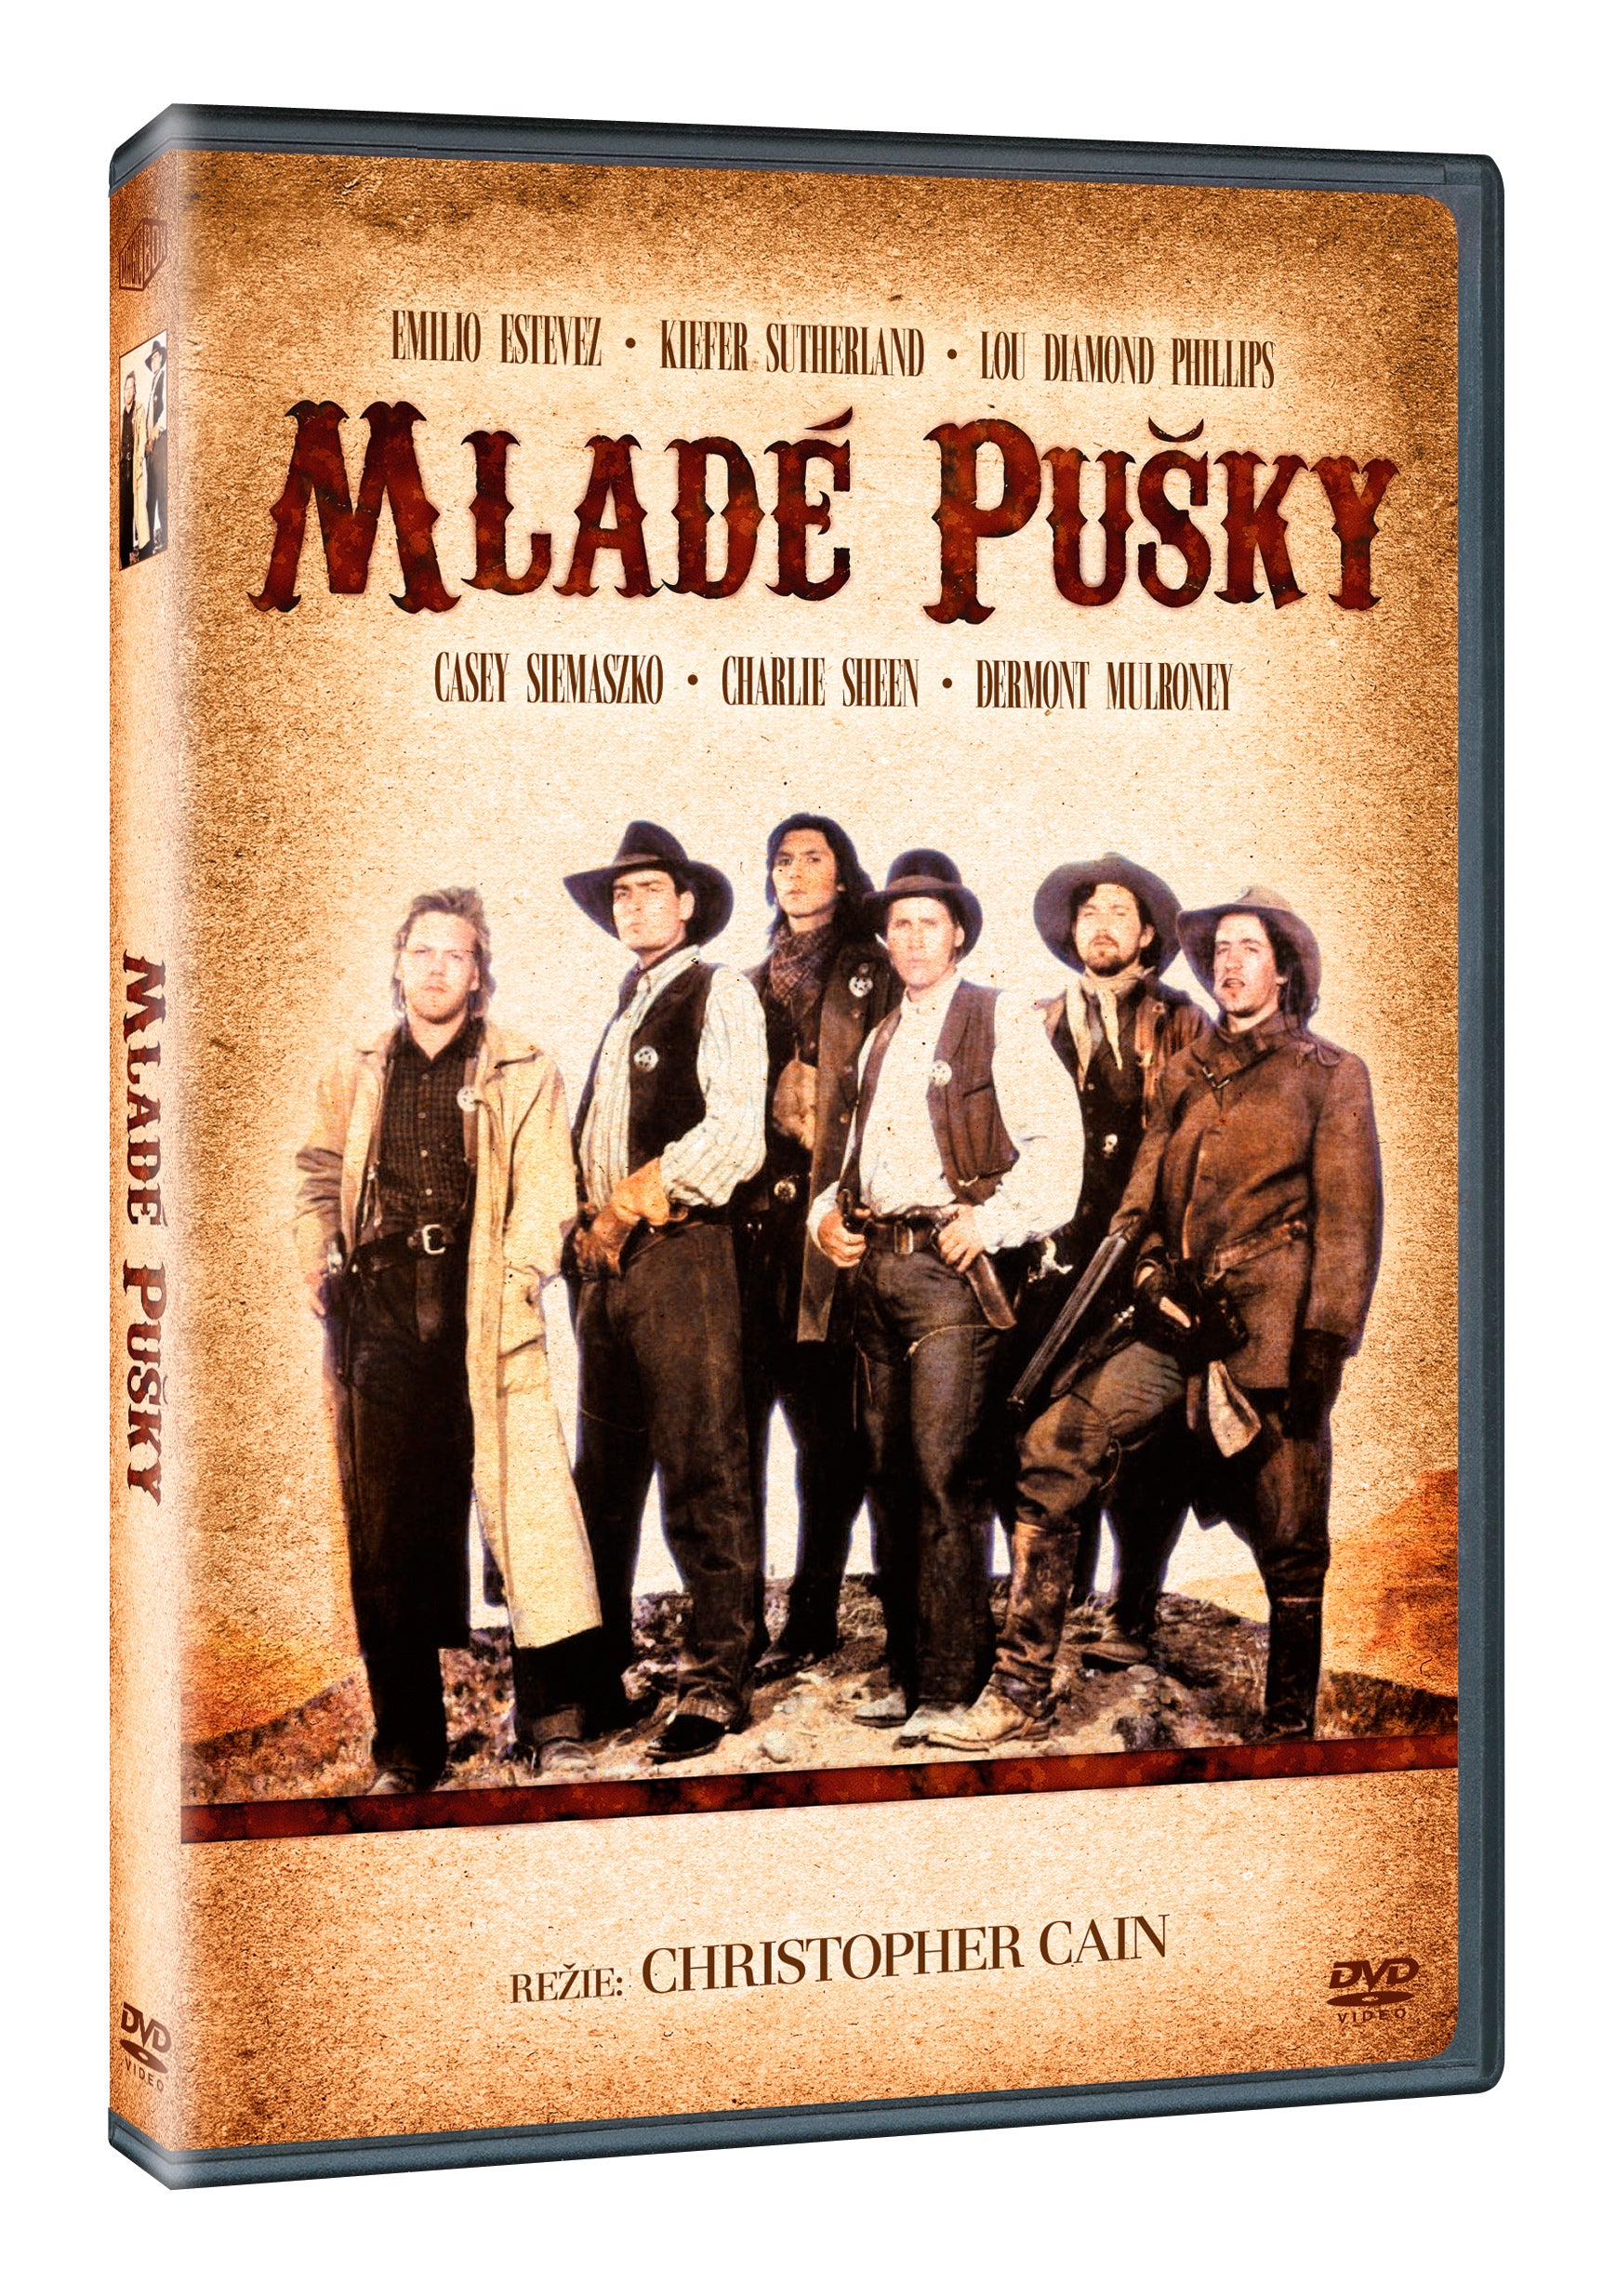 Mlade pusky DVD / Young Guns